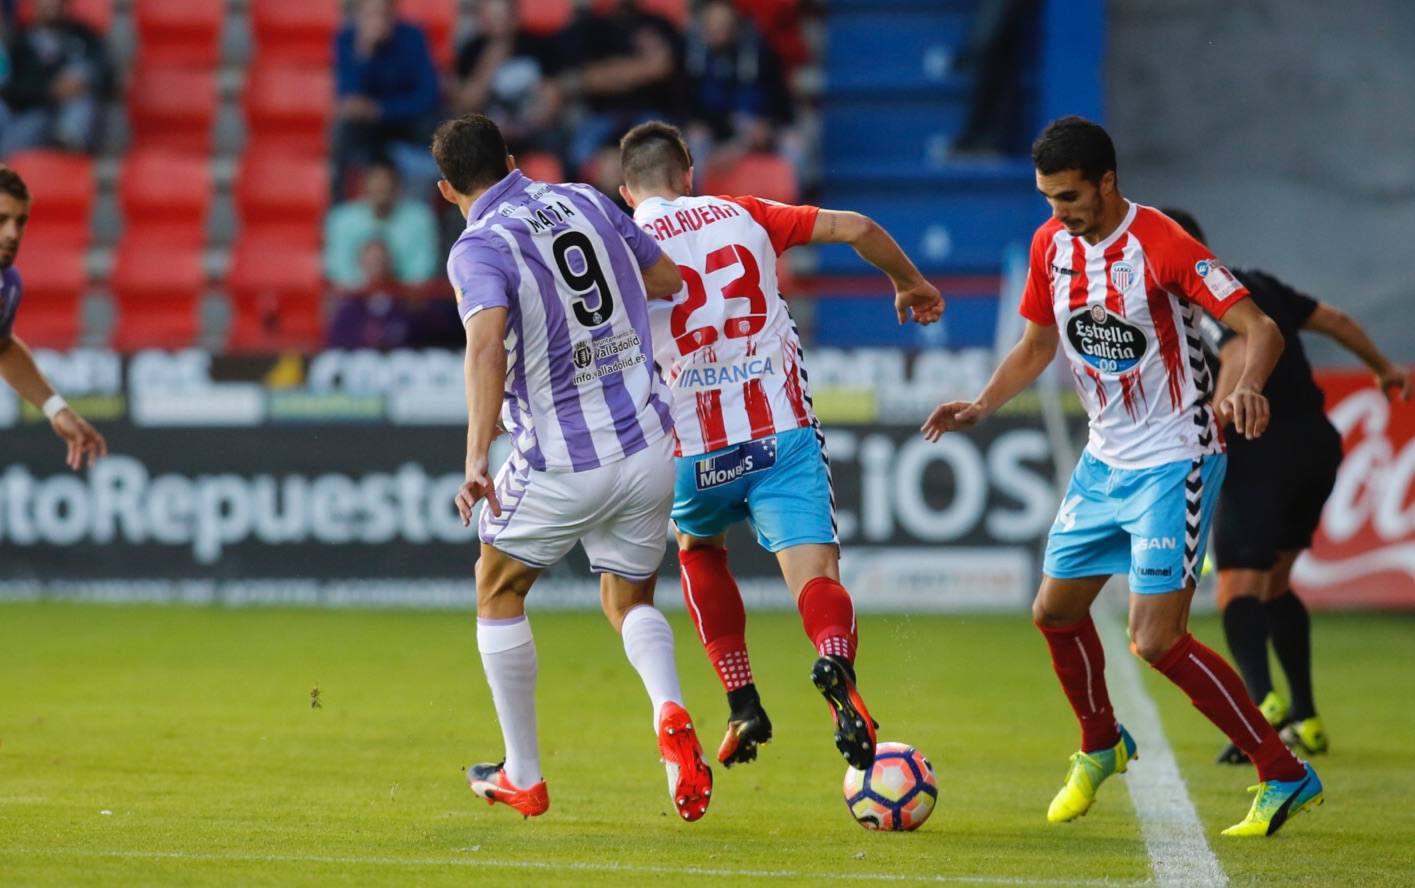 Lugo 1-0 Real Valladolid